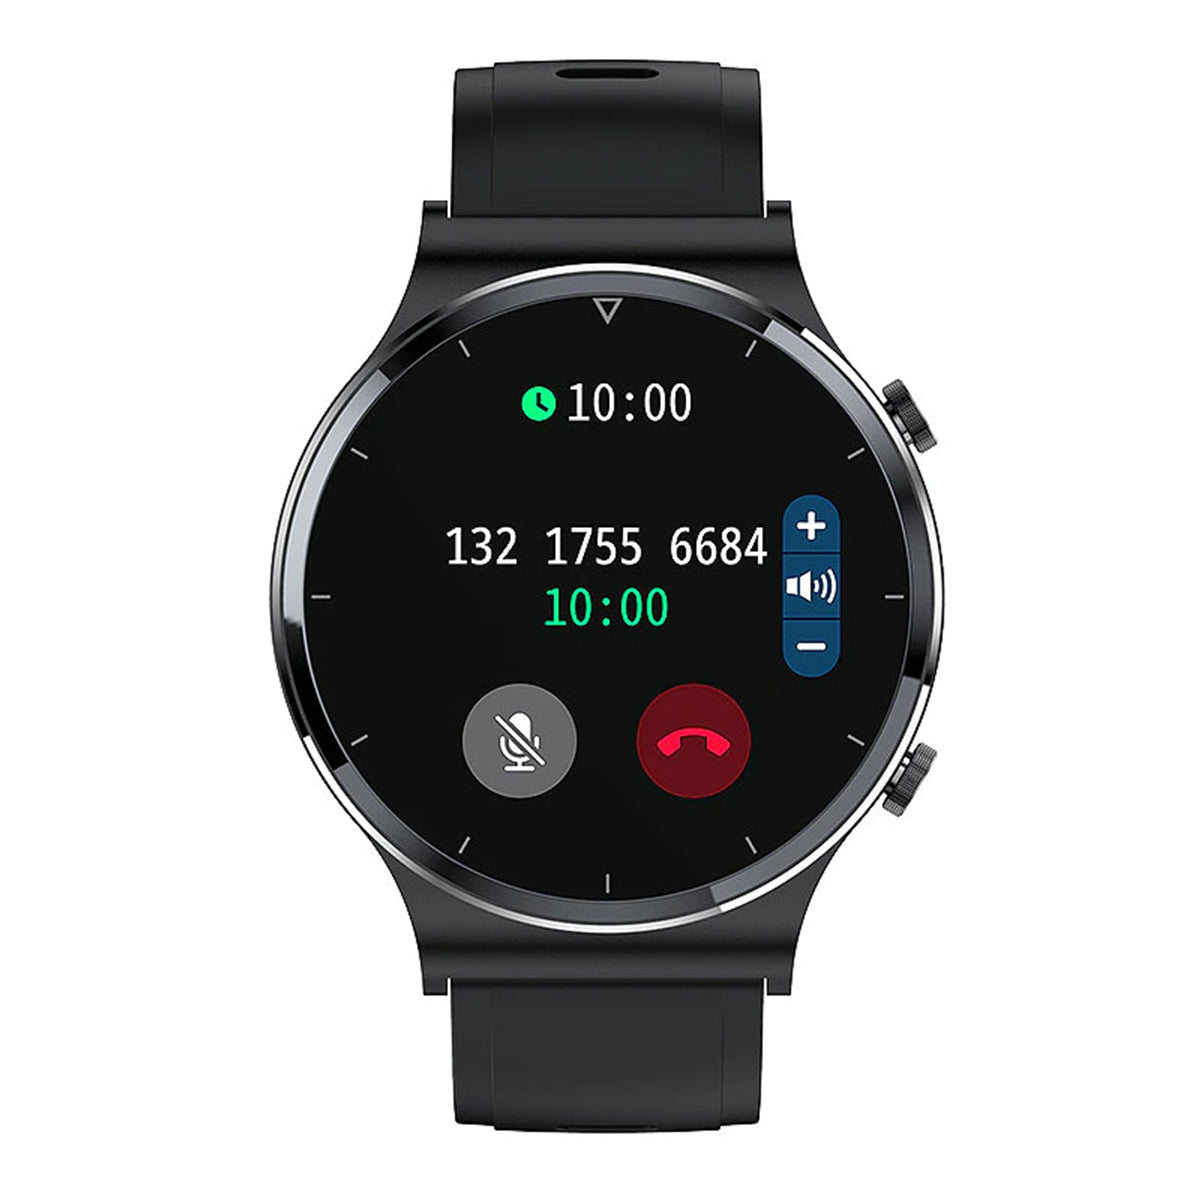 Fralugio Smart watch Reloj Inteligente S600 Full Touch Monitores de Ejercicio